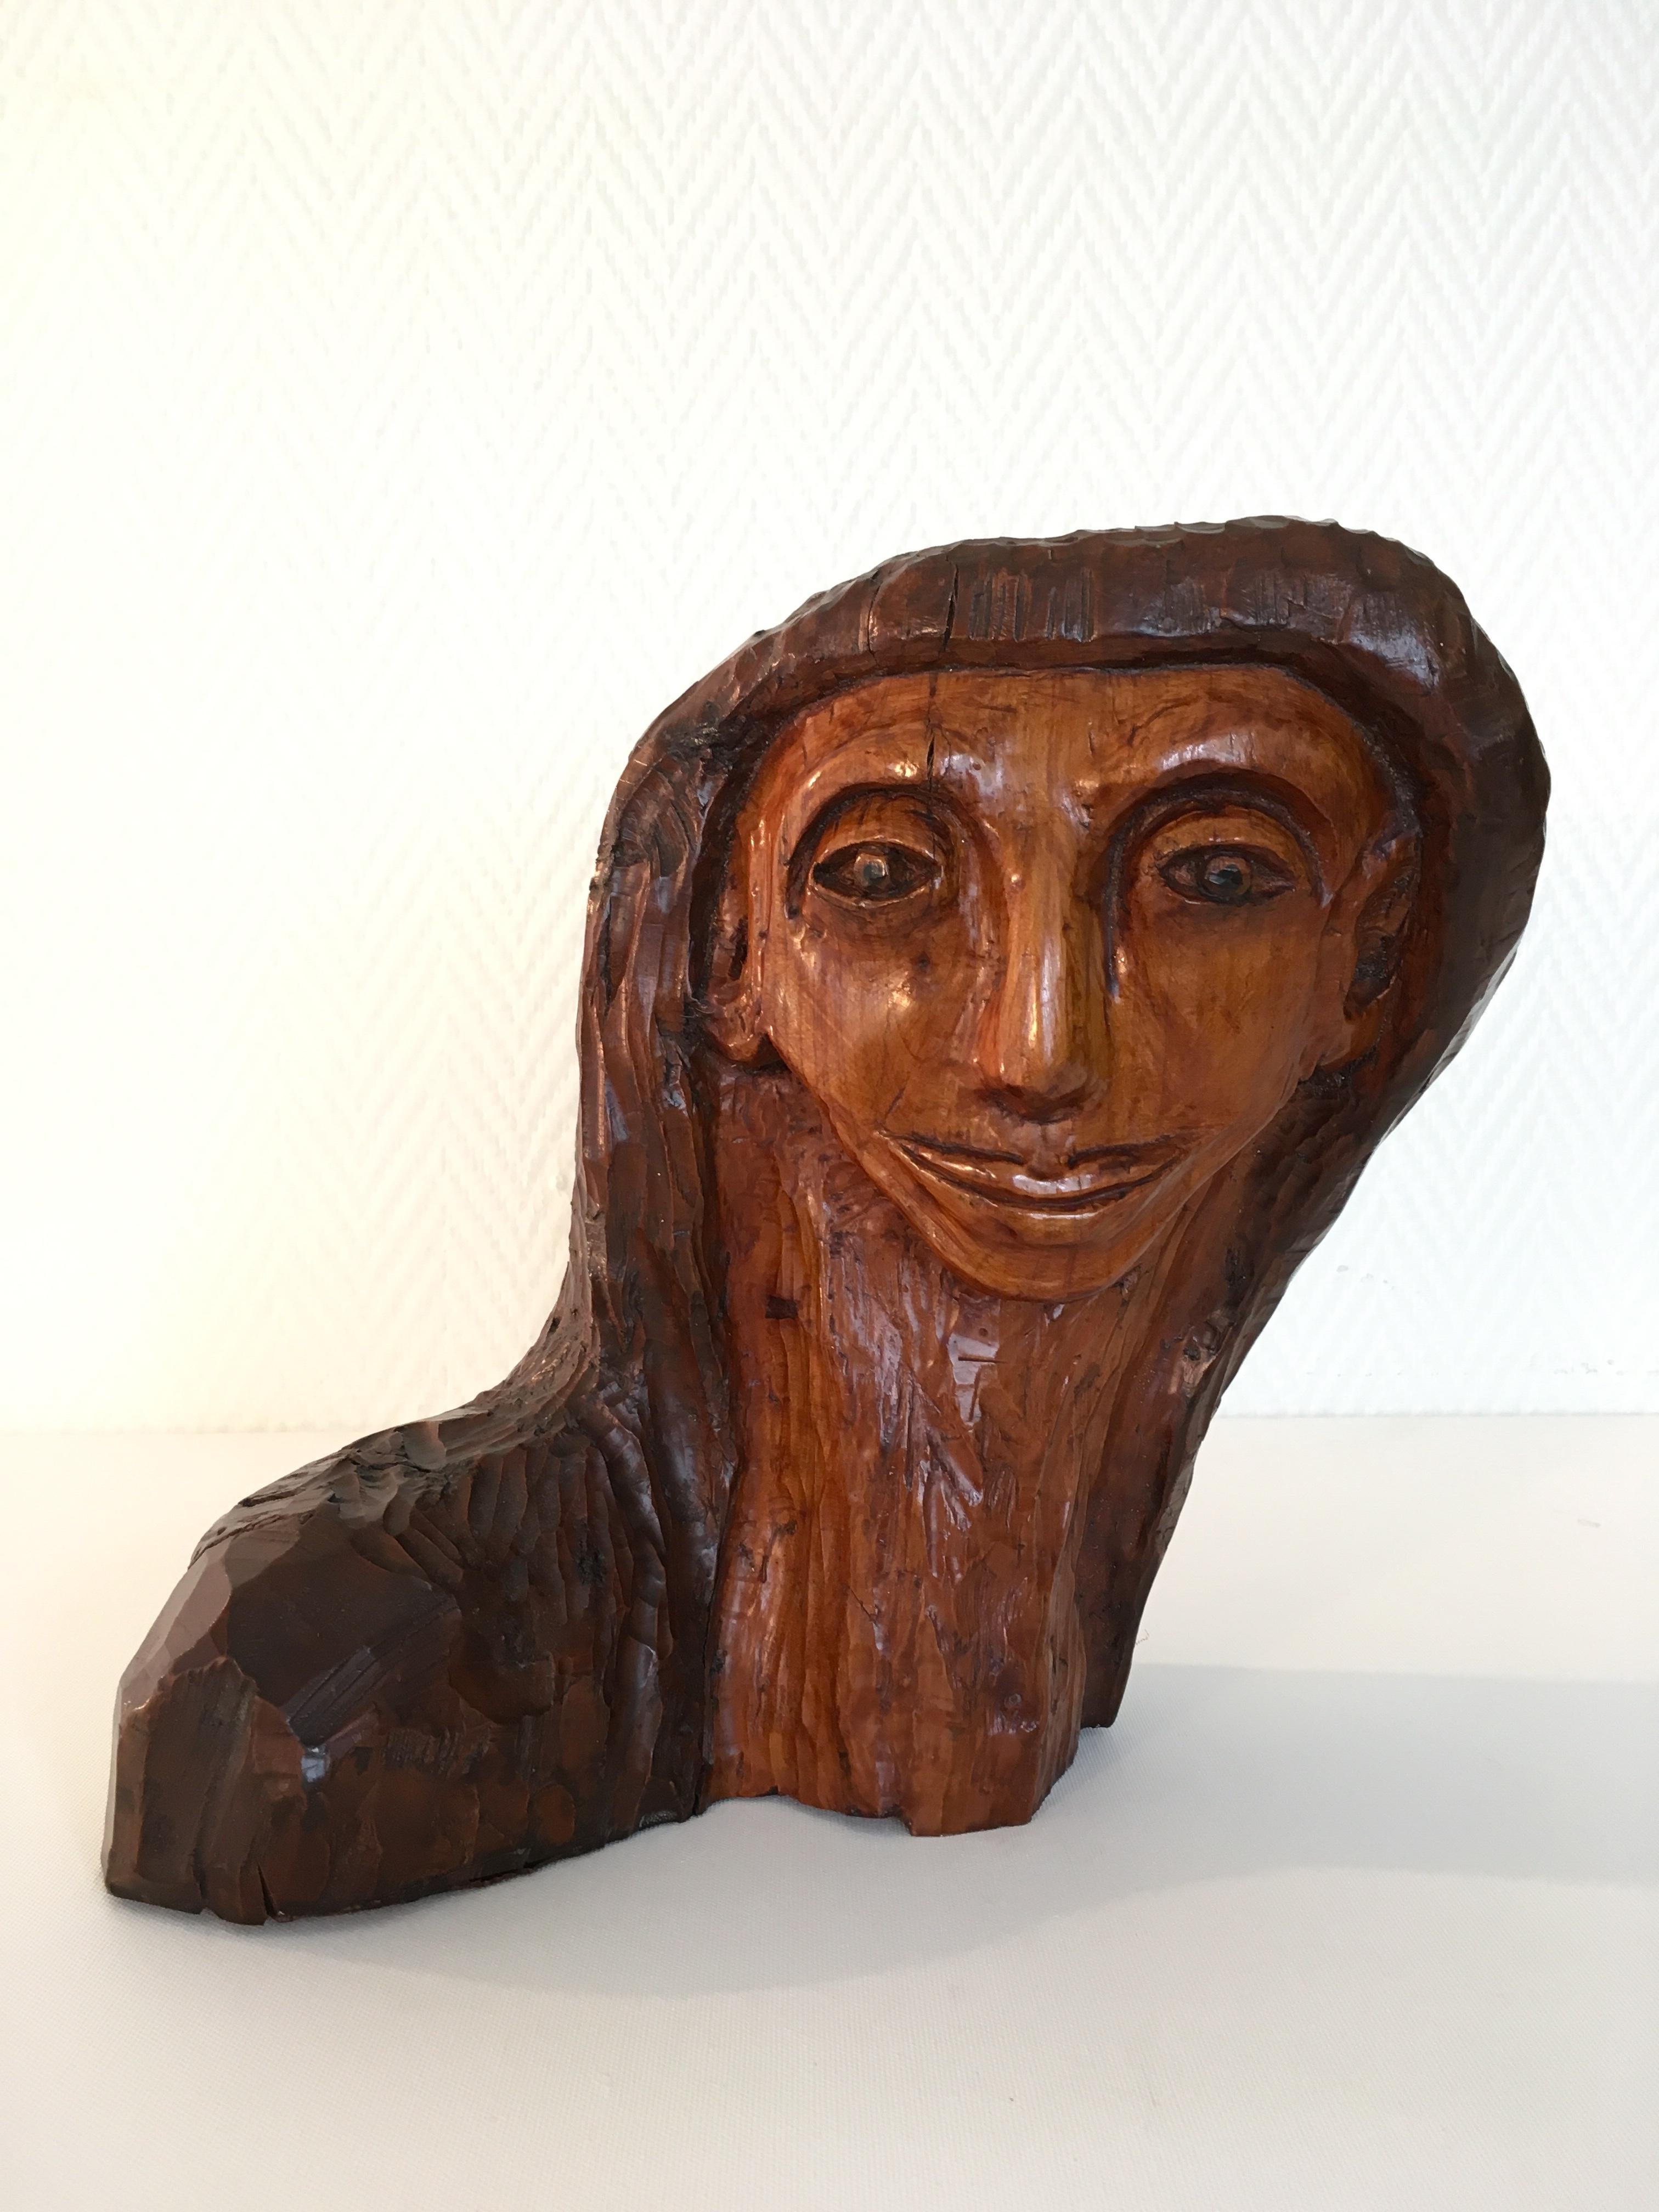 Ein sehr ungewöhnliches Stück! Dieser handgeschnitzte Frauenkopf wurde aus einem Stück Hartholz geschnitzt, gebeizt und lackiert. Es hat einen sehr Midcentury-Look. Darunter steht mit einem Marker 